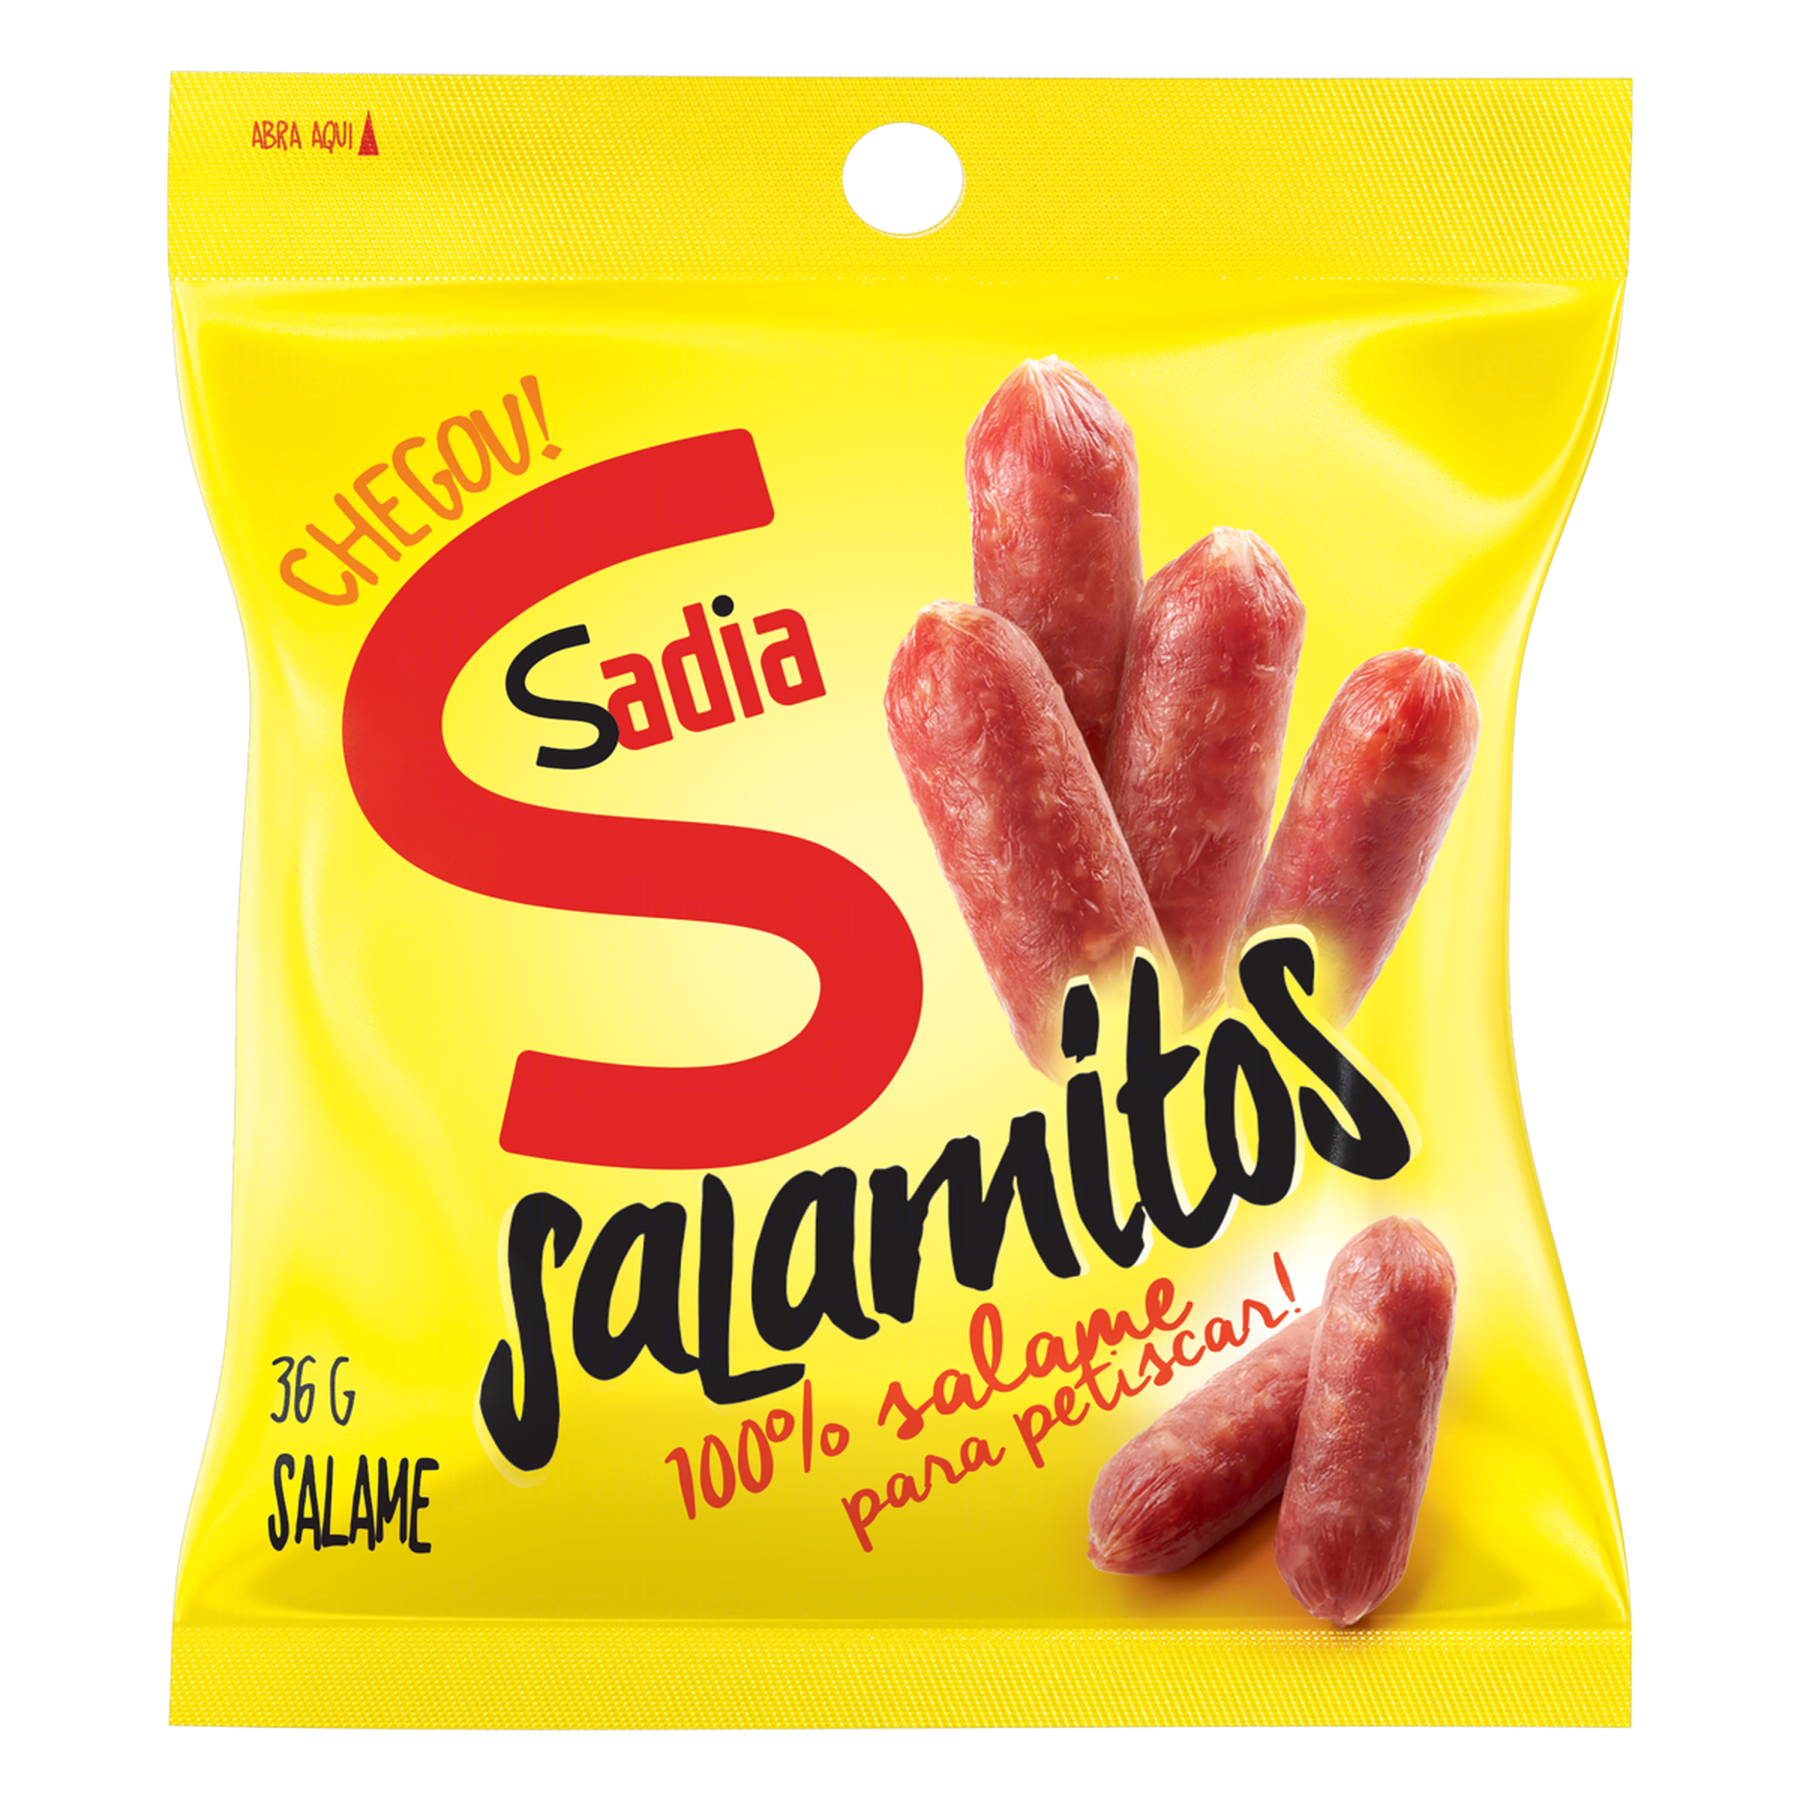 Salame Salamitos Sadia 36g 